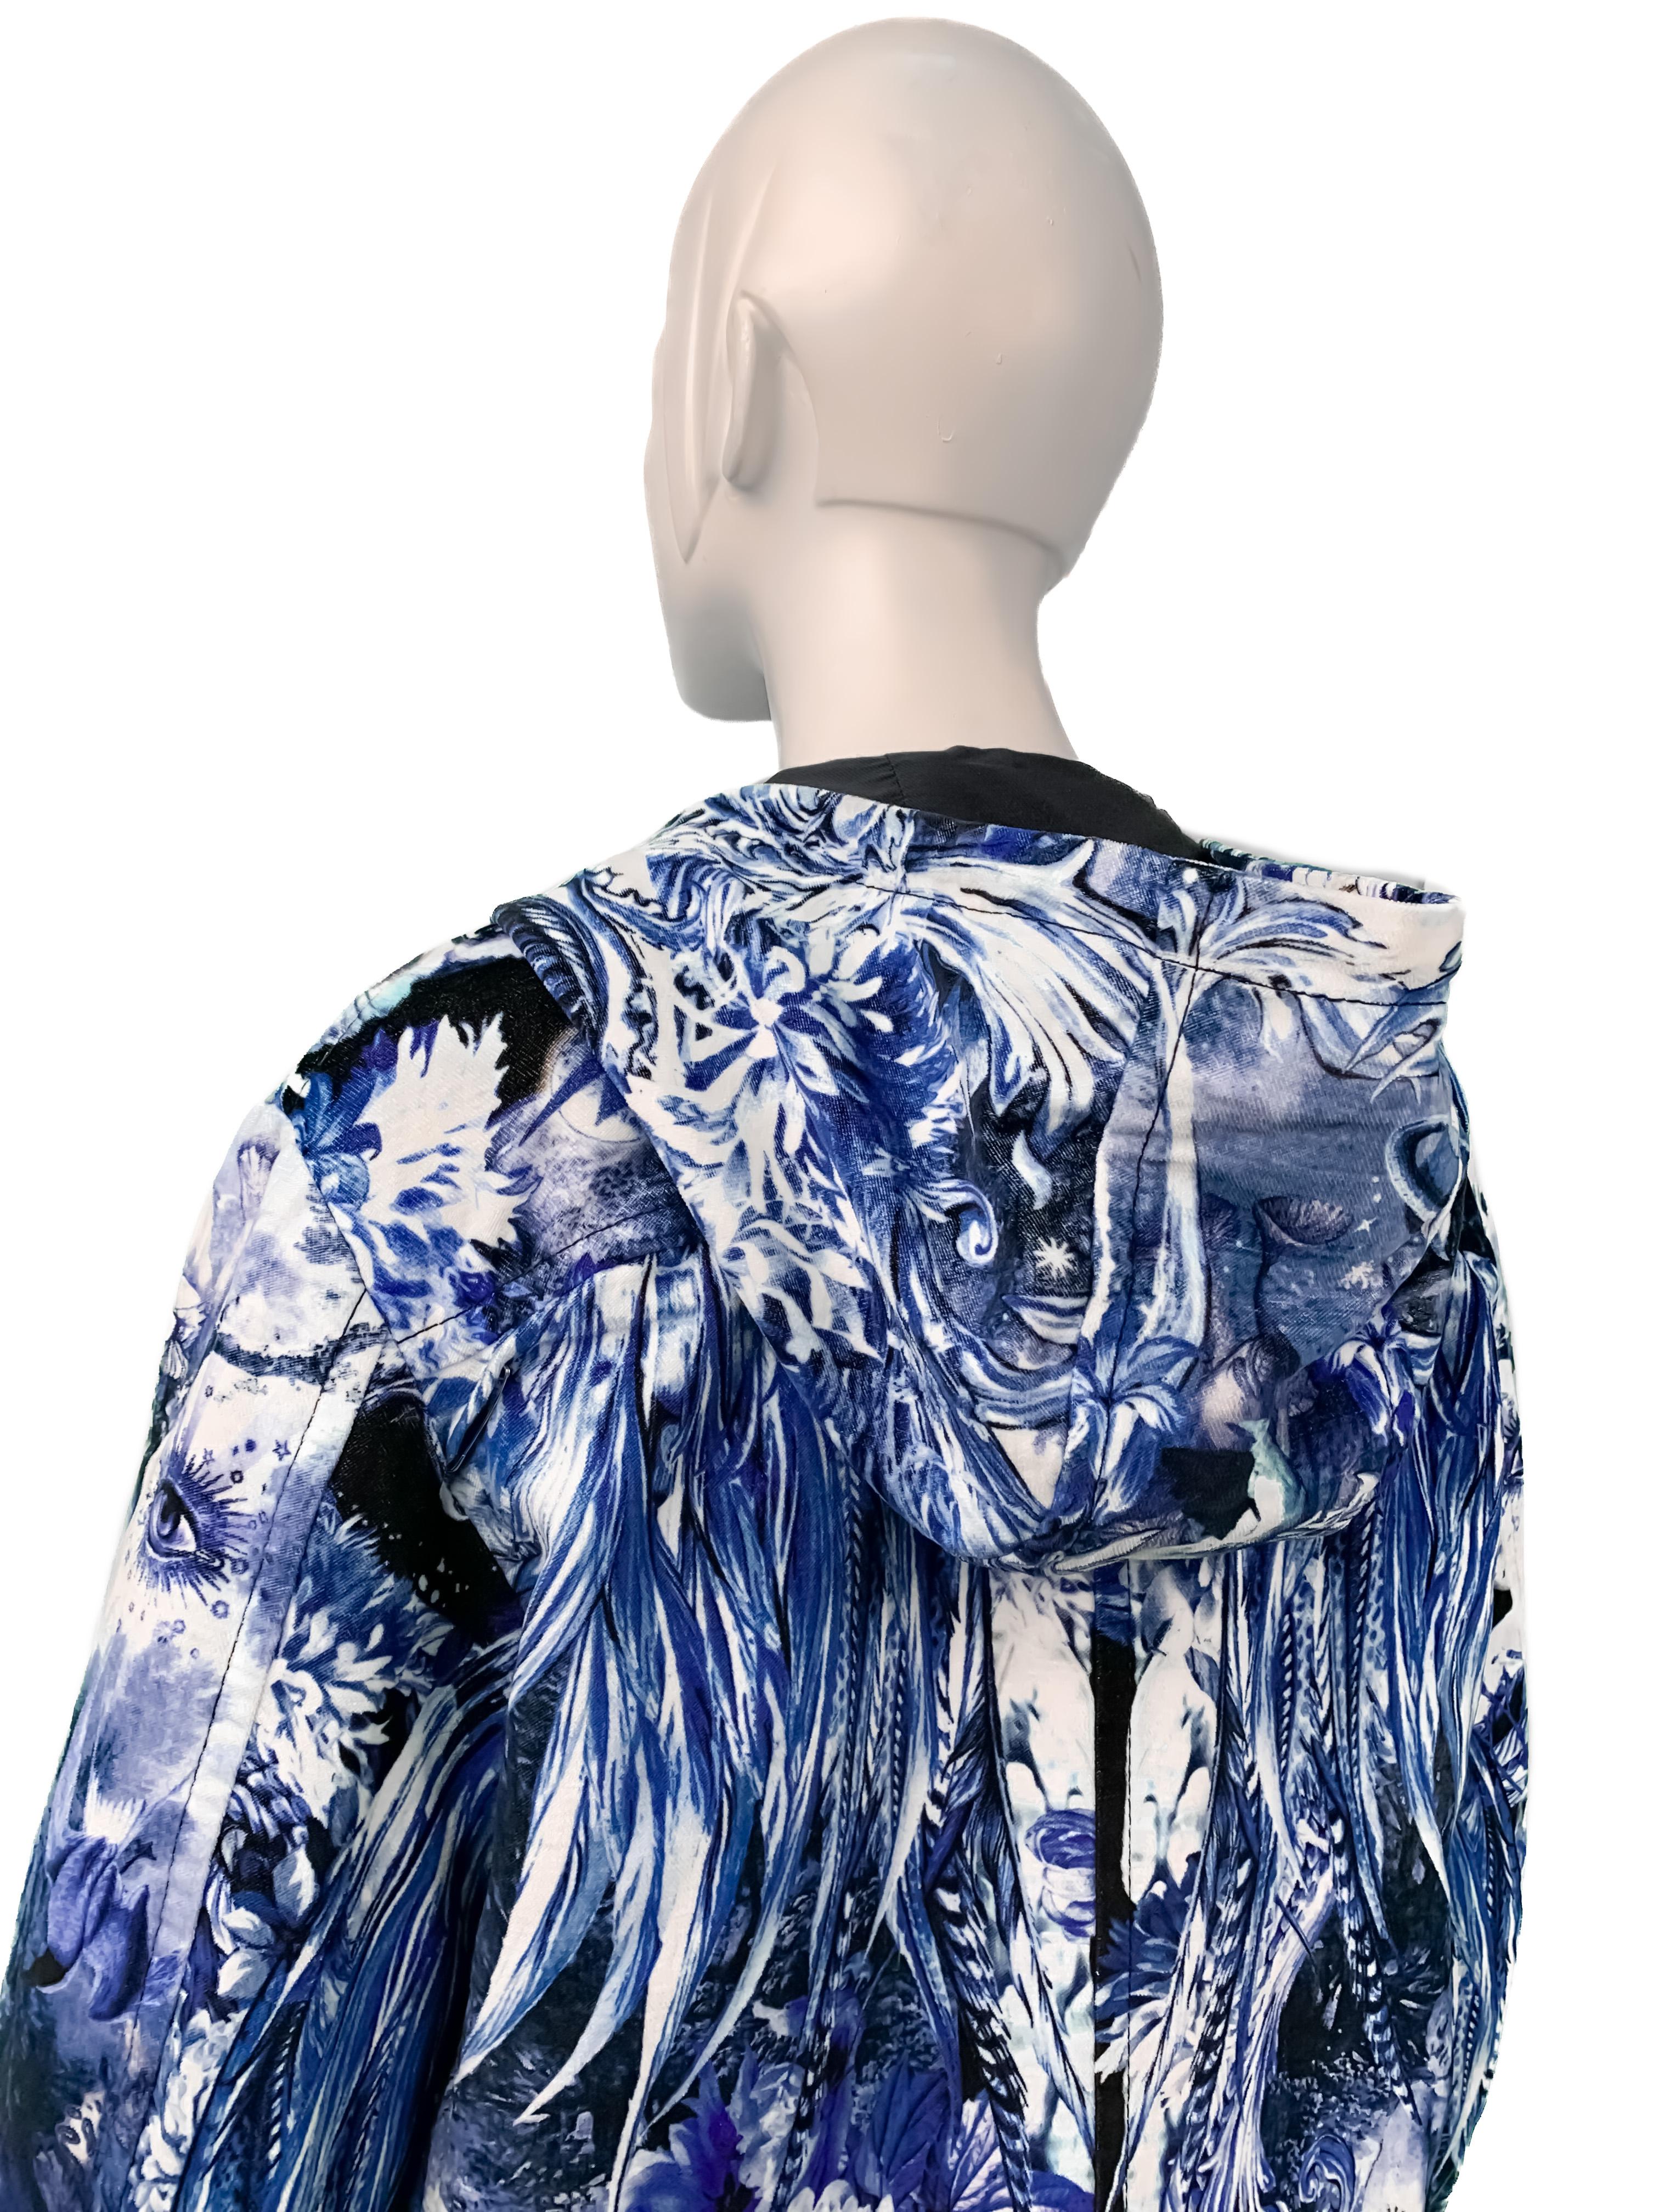 Roberto Cavalli 2016 Chinoiserie Velvet Jacket, Coat w/Baroque Porcelain Print  2